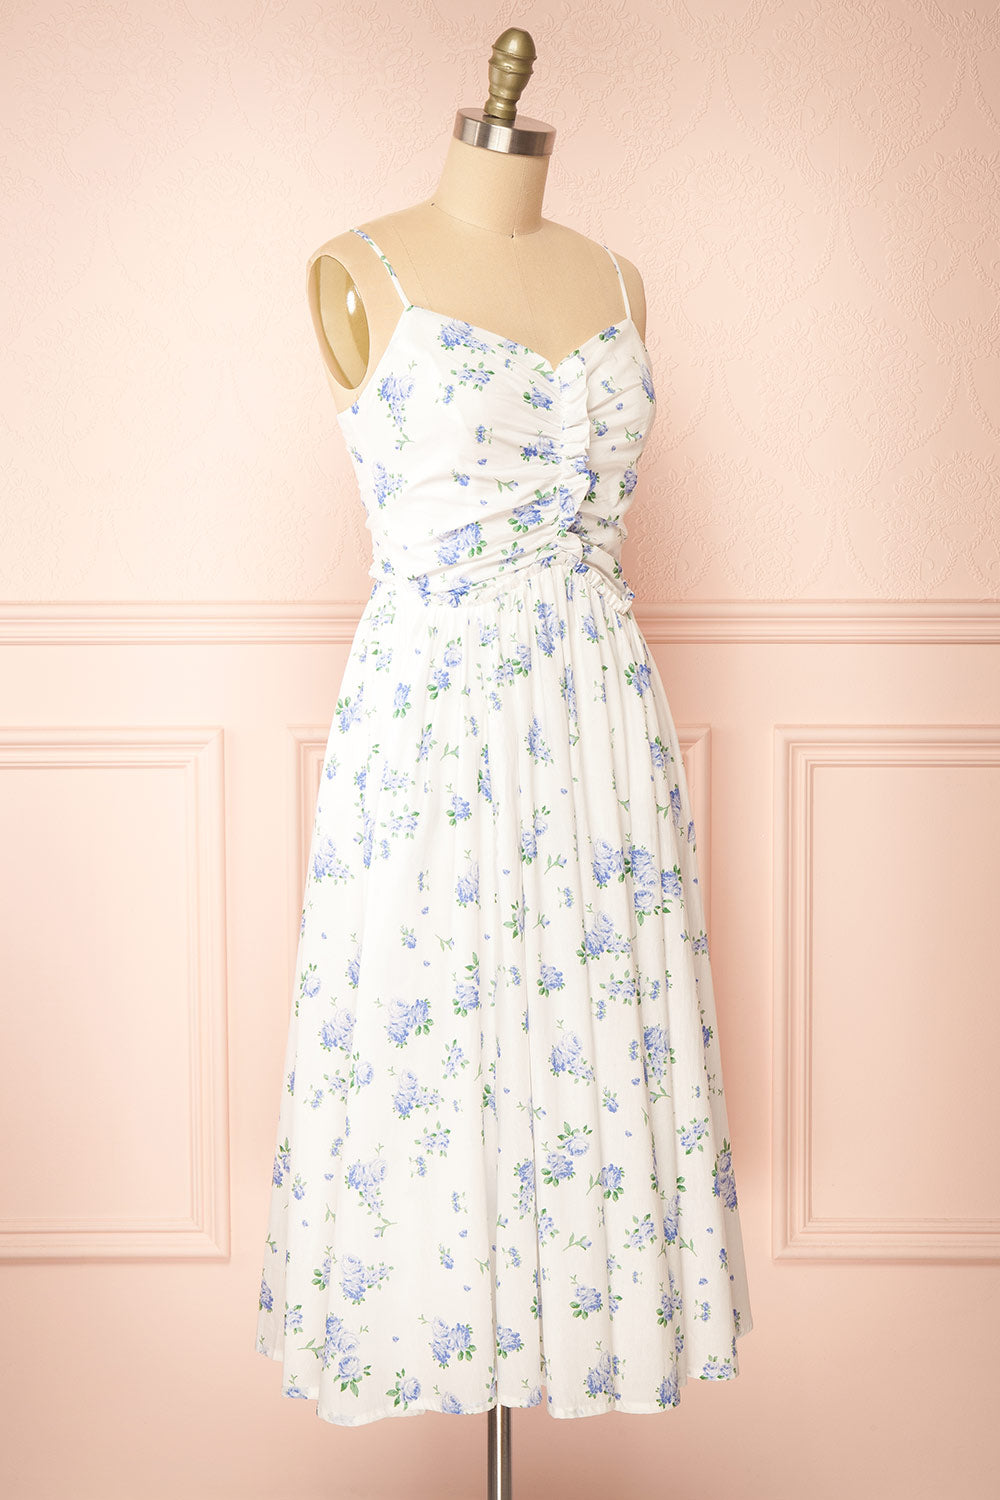 Sayonelle Short White A-line Dress w/ Blue Floral Motif | Boutique 1861  side view